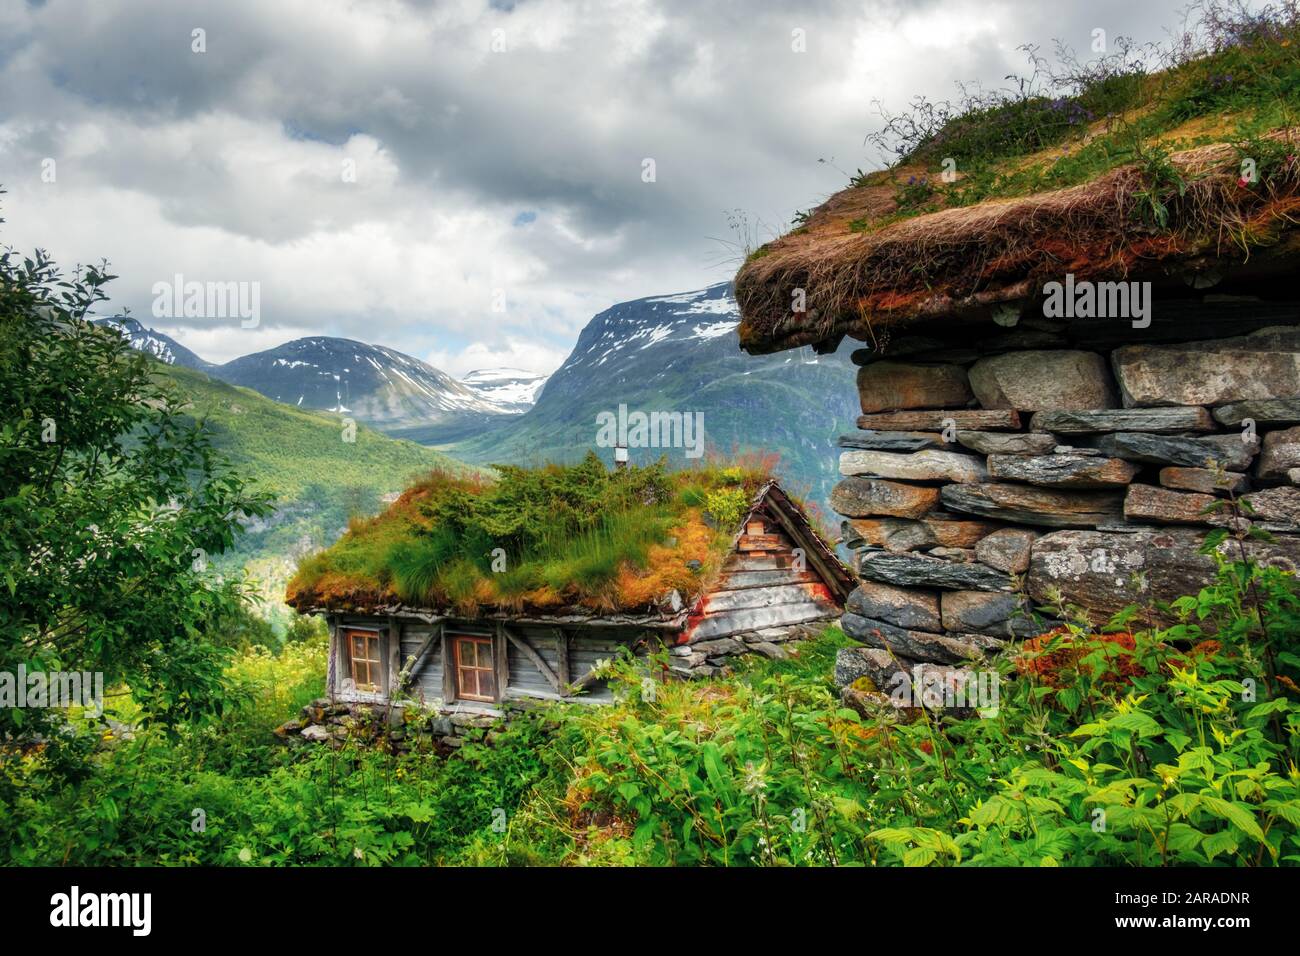 Casas de madera antiguas típicas noruegas con techos de hierba cerca del fiordo Sunnylvsfjorden y las famosas cascadas de Seven Sisters, al oeste de Noruega. Fotografía de paisajes Foto de stock